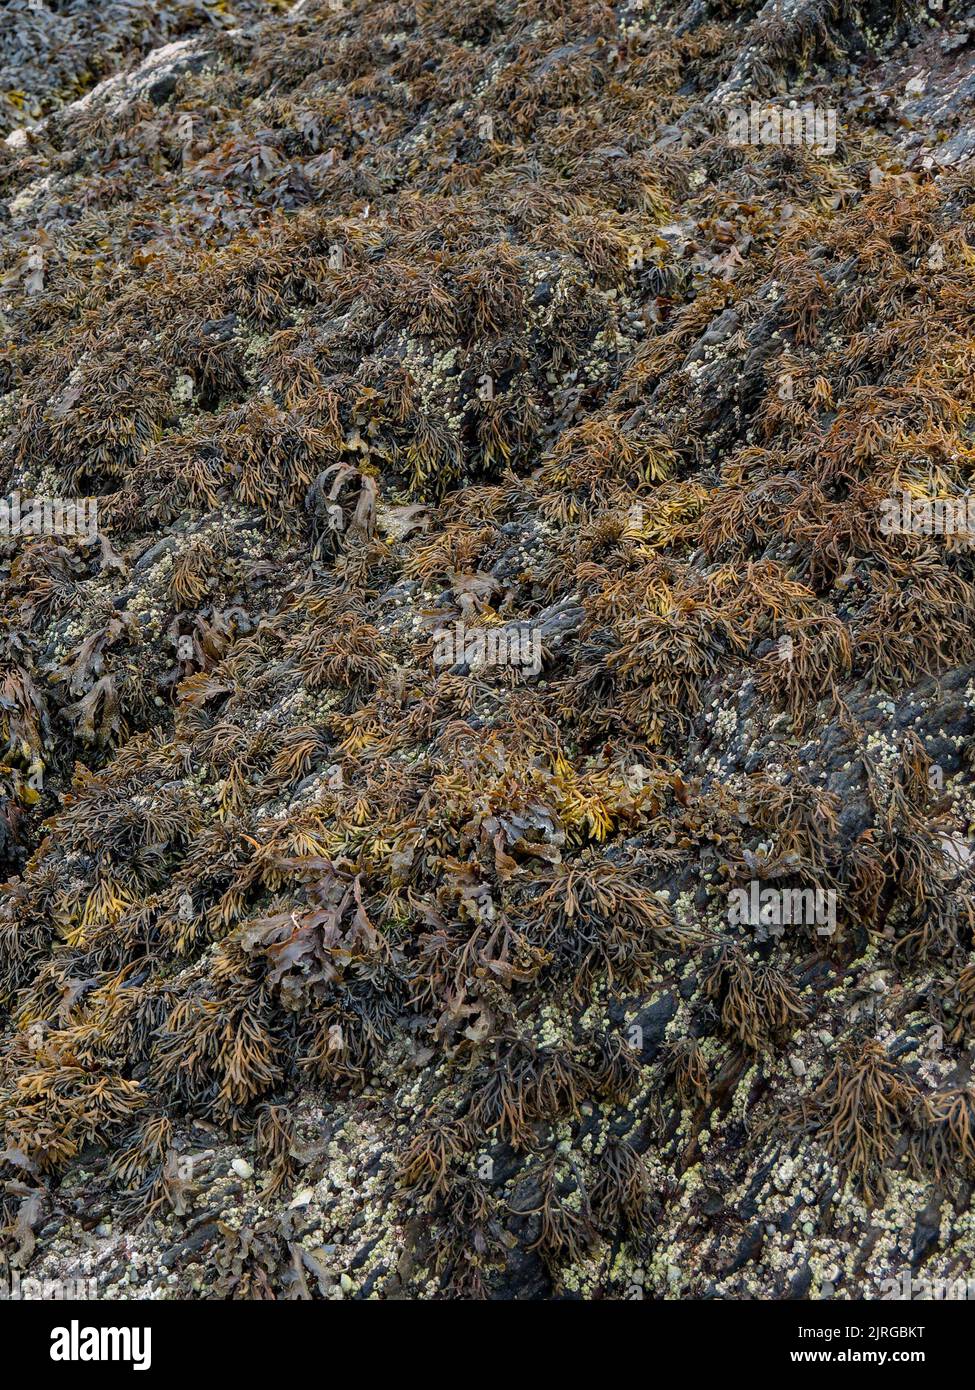 De nombreuses algues brunes poussent à la surface de la roche côtière. Arrière-plan. Banque D'Images